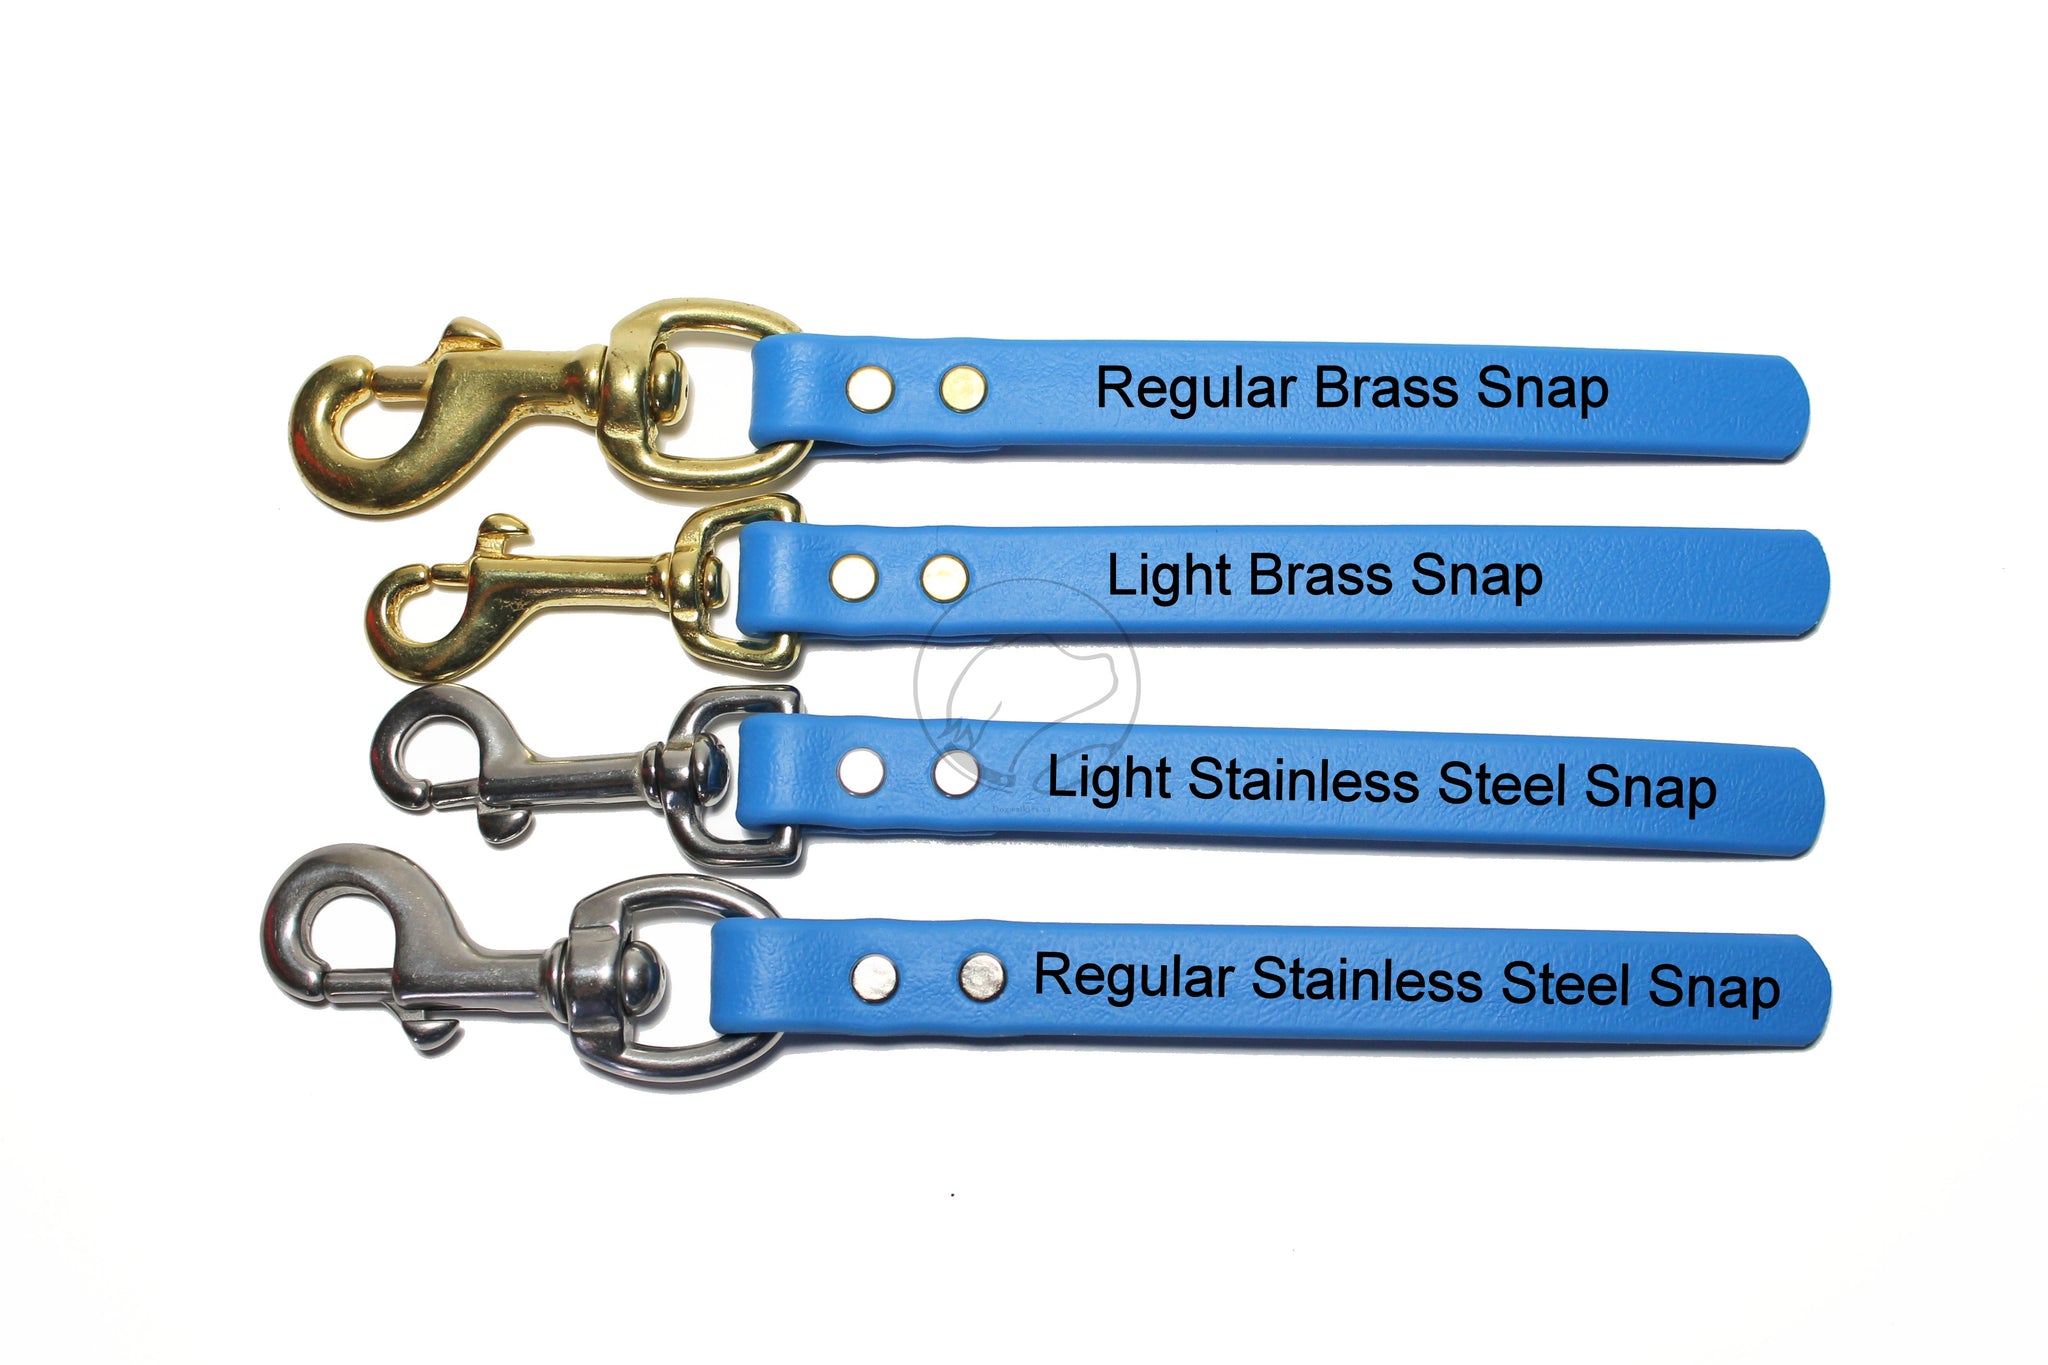 Dog Agility Tab - Bringsel - Brass Hardware - Dog Training Tab Loops in Genuine Biothane